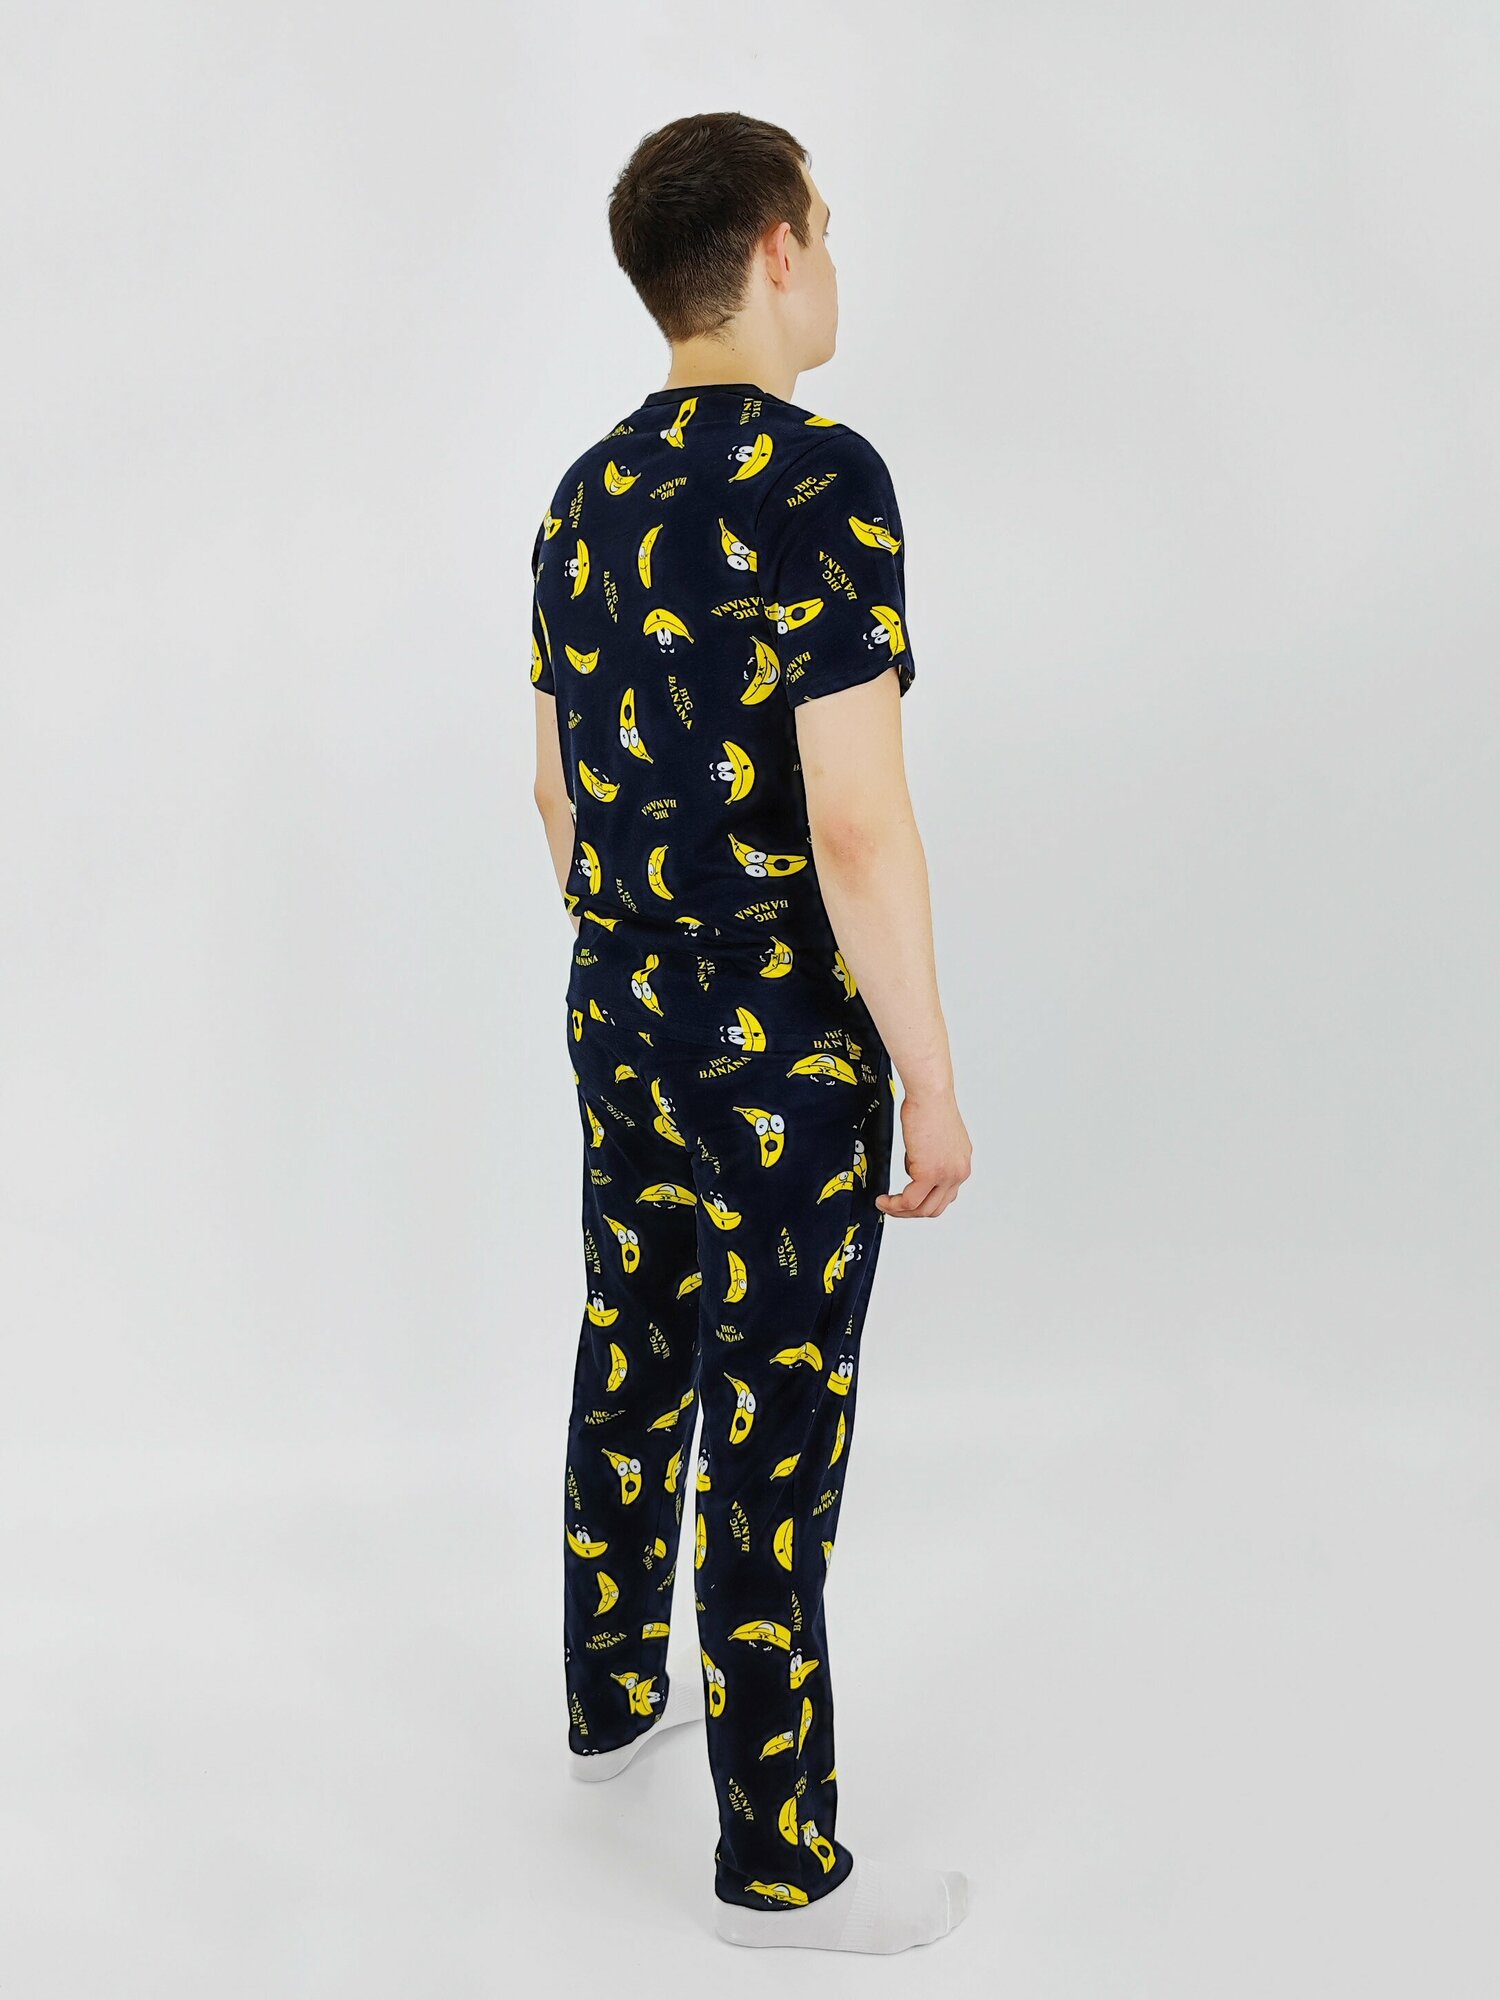 Мужская пижама, мужской пижамный комплект ARISTARHOV, Футболка + Брюки, Бананчик, синий желтый, размер 54 - фотография № 3